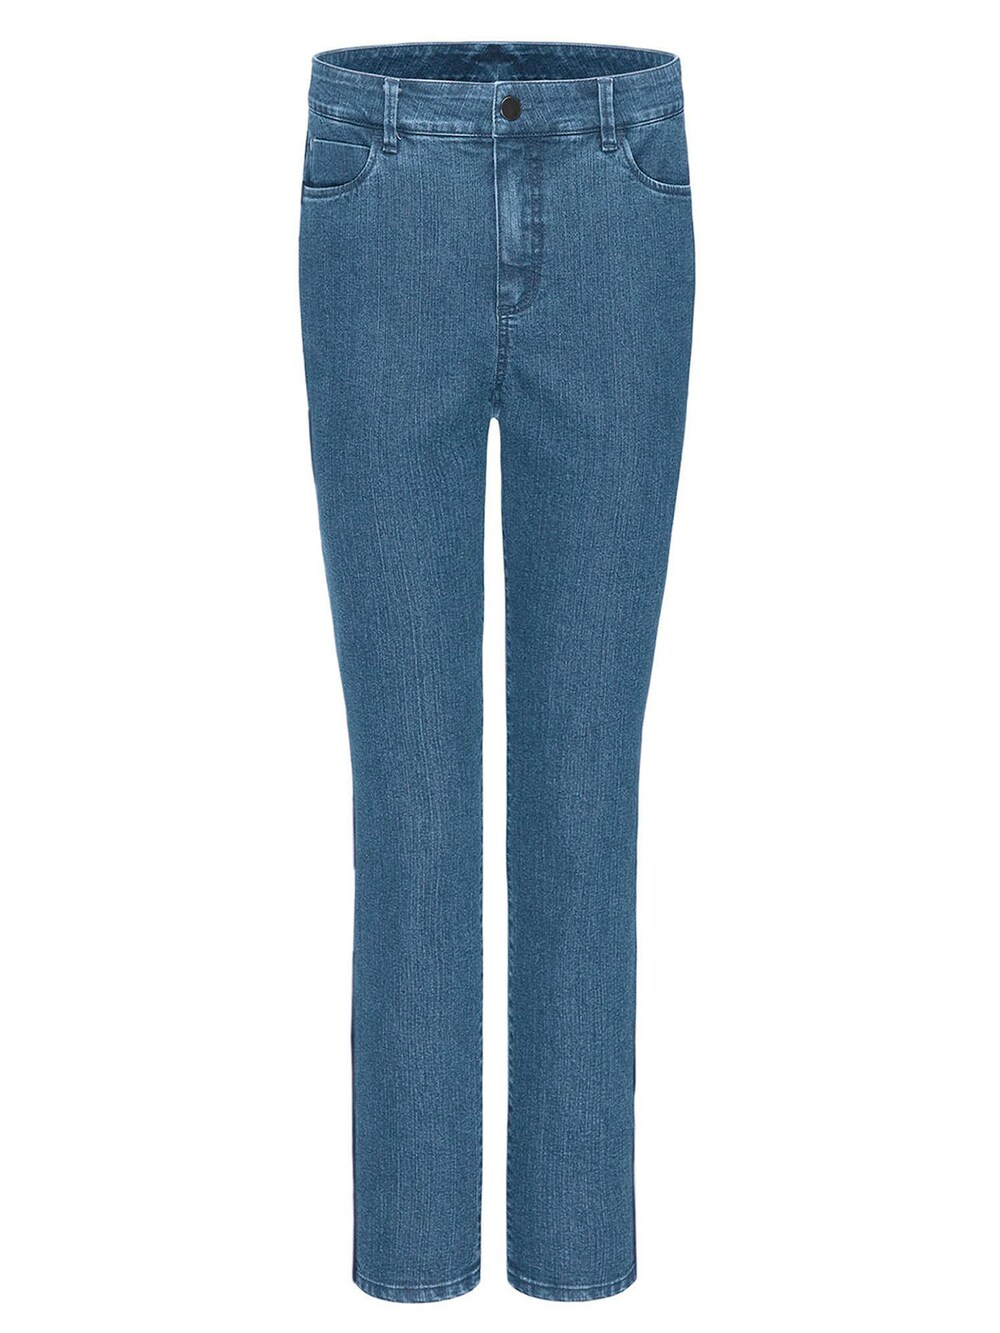 Обычные джинсы Goldner, синий